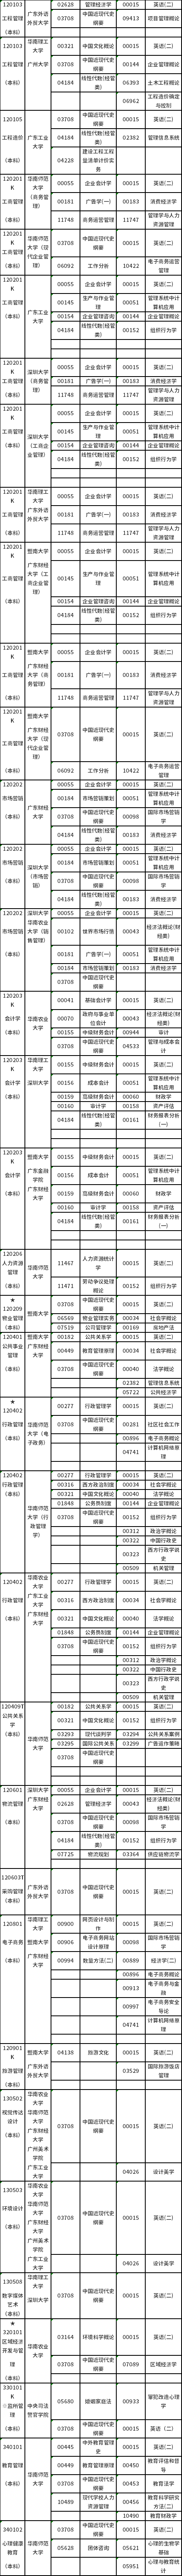 广东2022年10月23日自考(本科)开考专业及考试科目